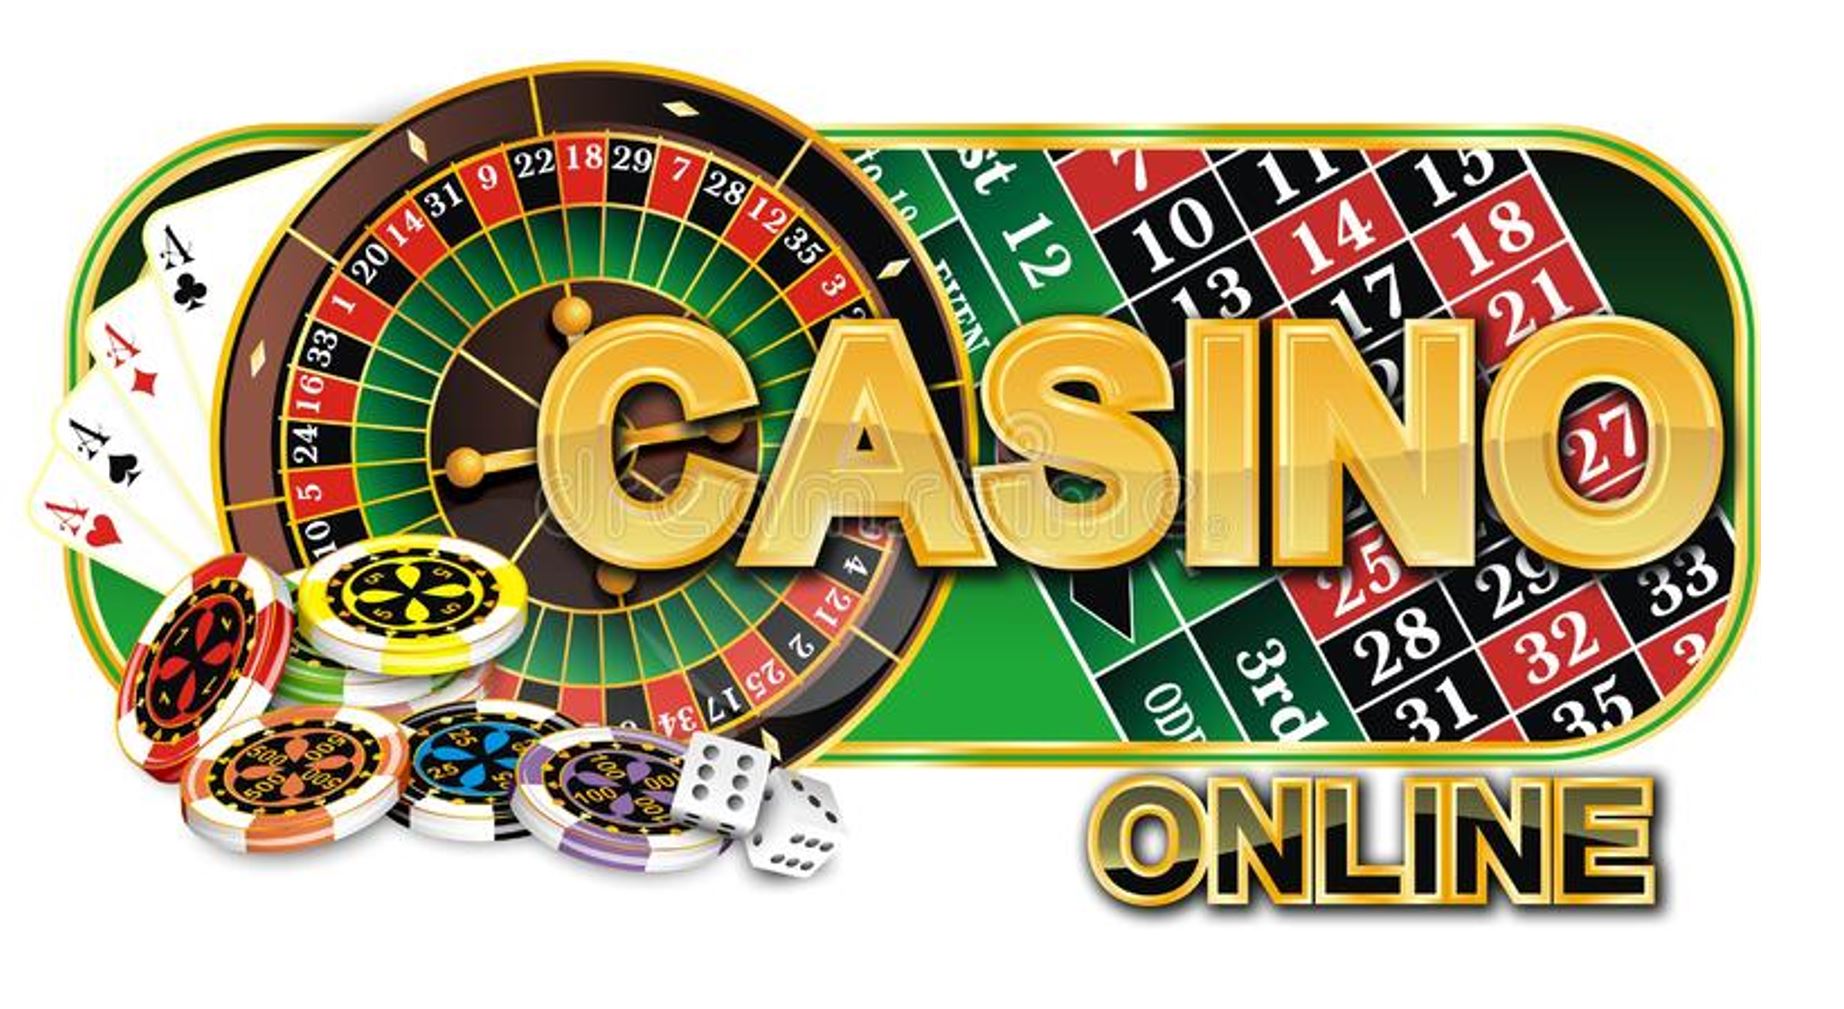 How to Cash in NordicBet Online Casino Malaysia Bonus